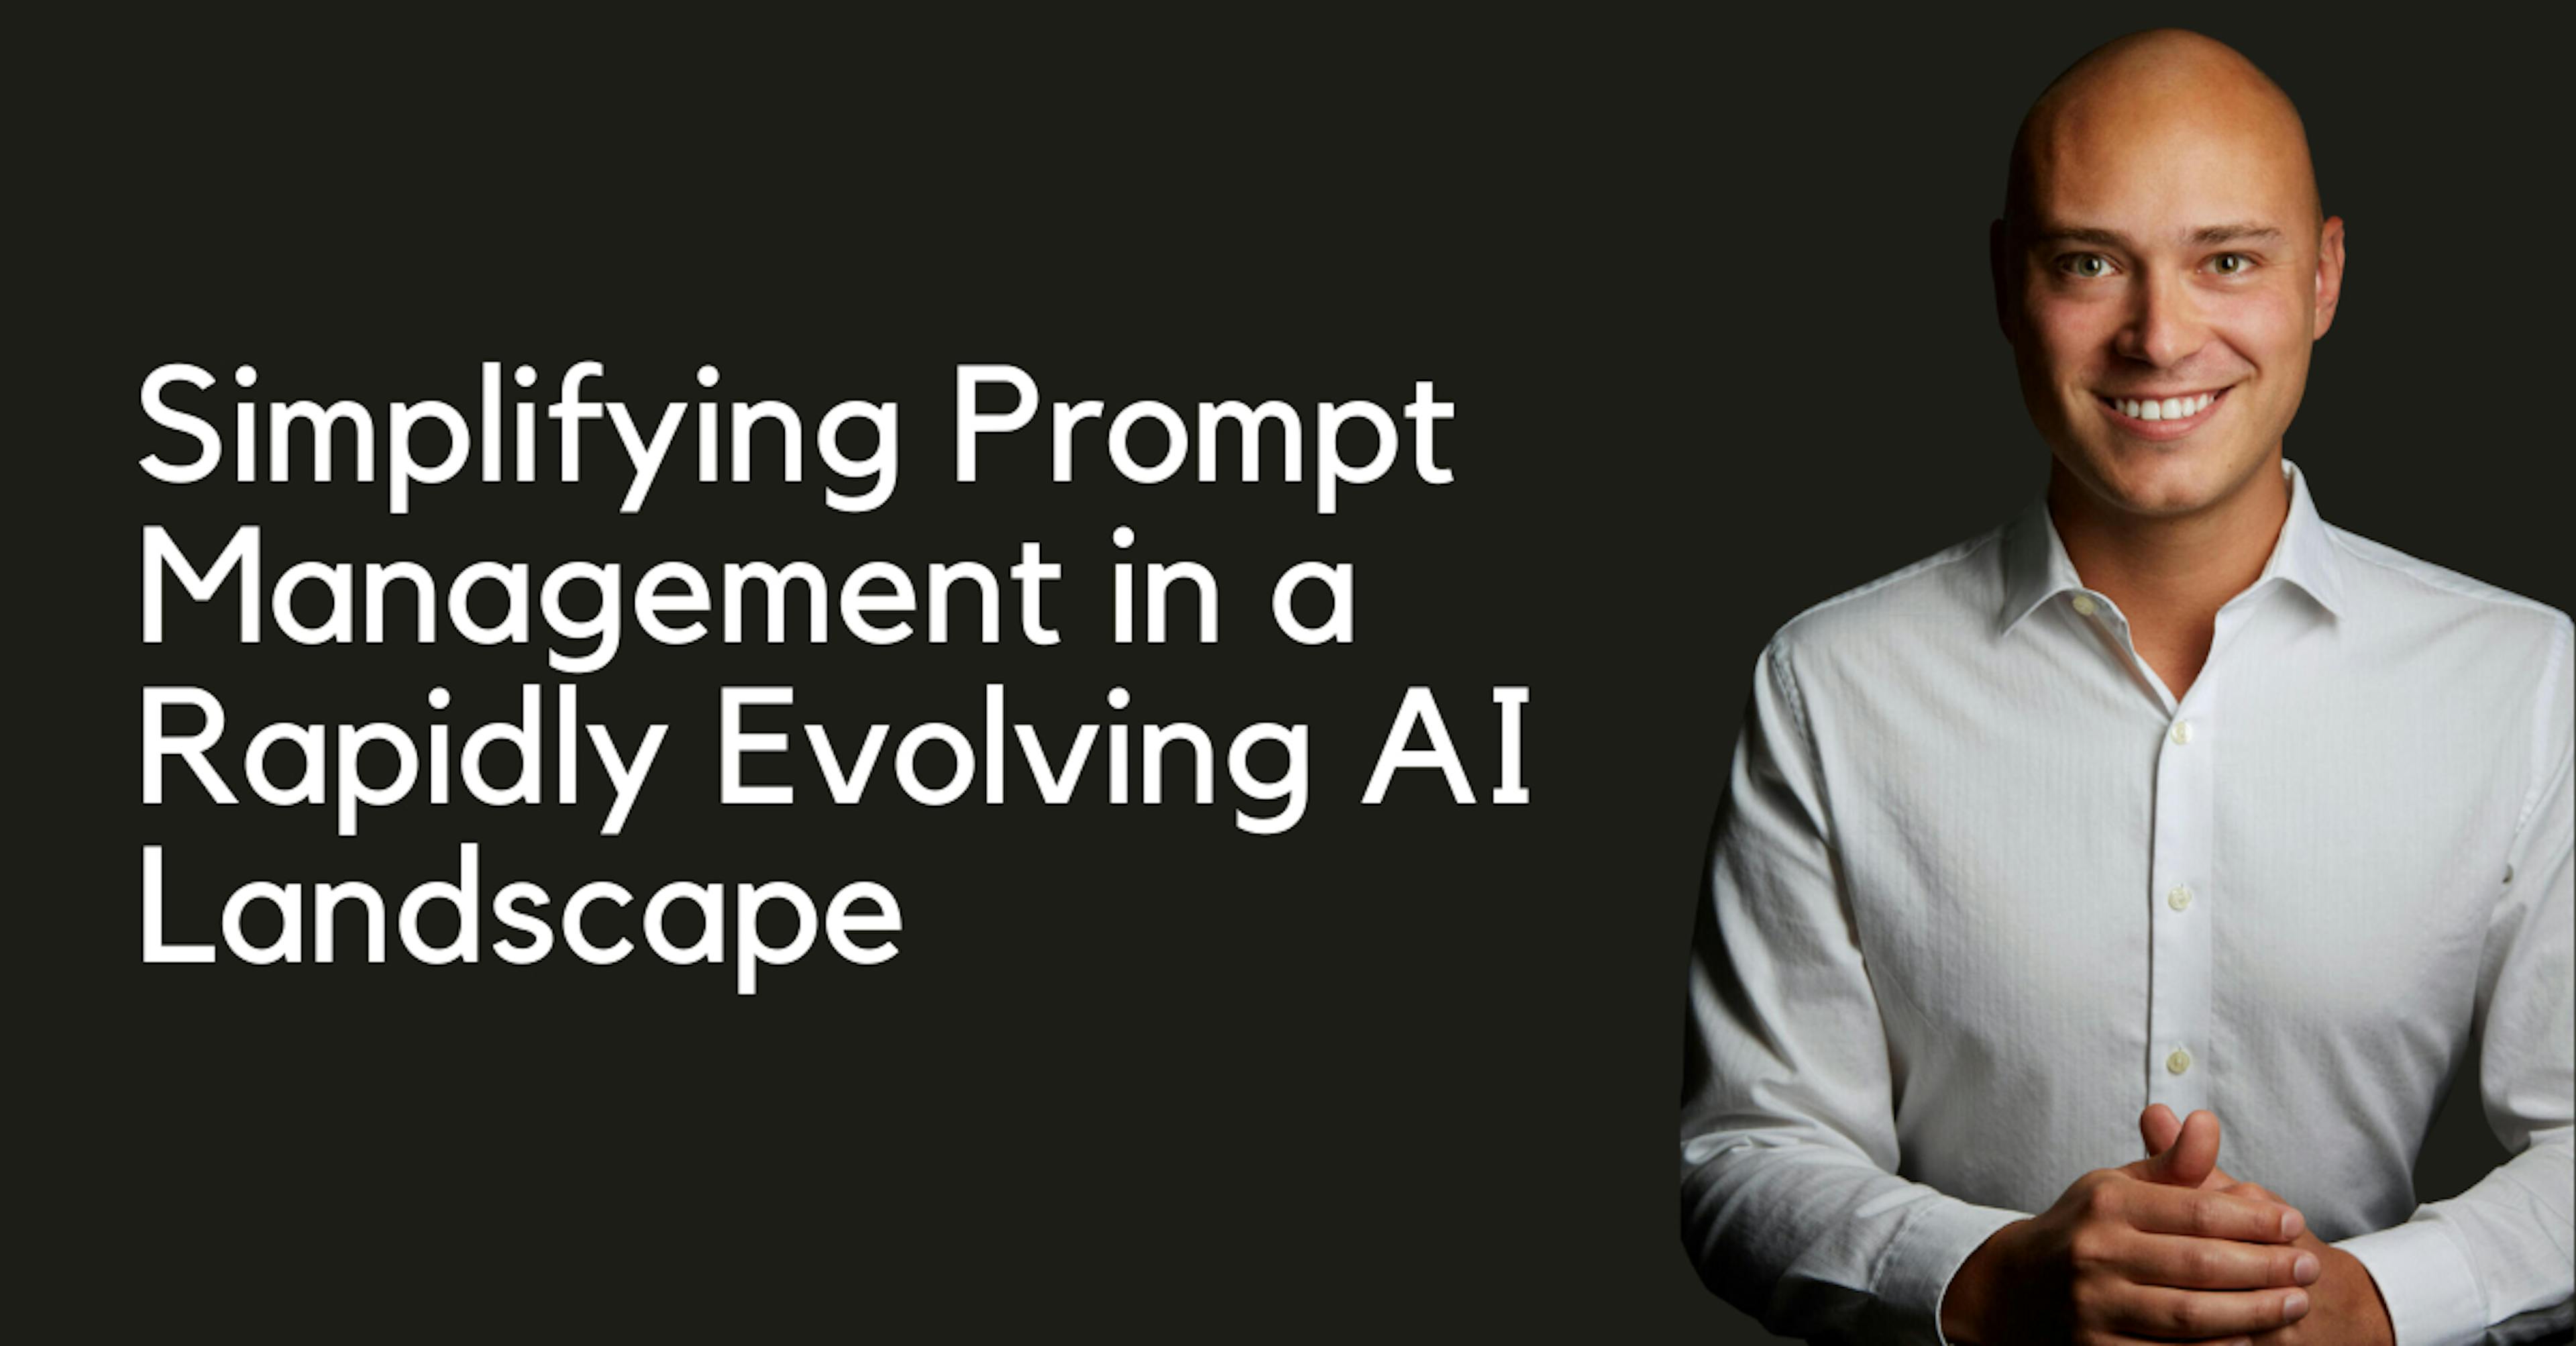 featured image - PromptDesk: simplificando o gerenciamento de prompts em um cenário de IA em rápida evolução